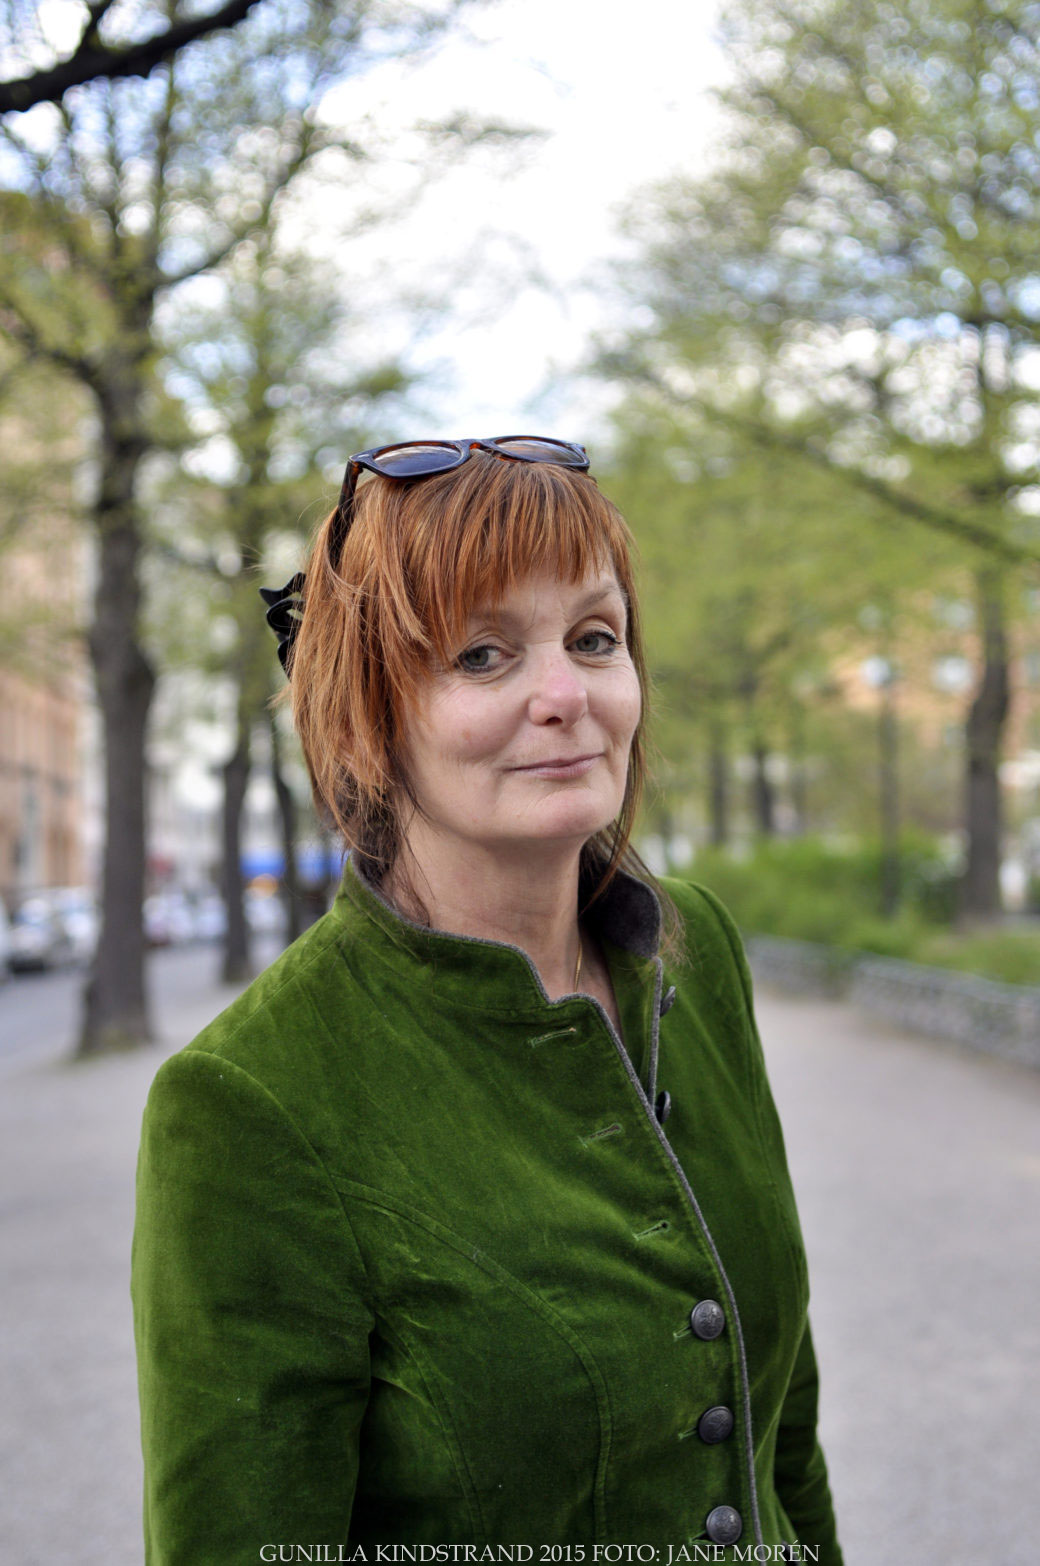 Reportage – Gunilla Kindstrand- Att söka sin klass och tillhörighet